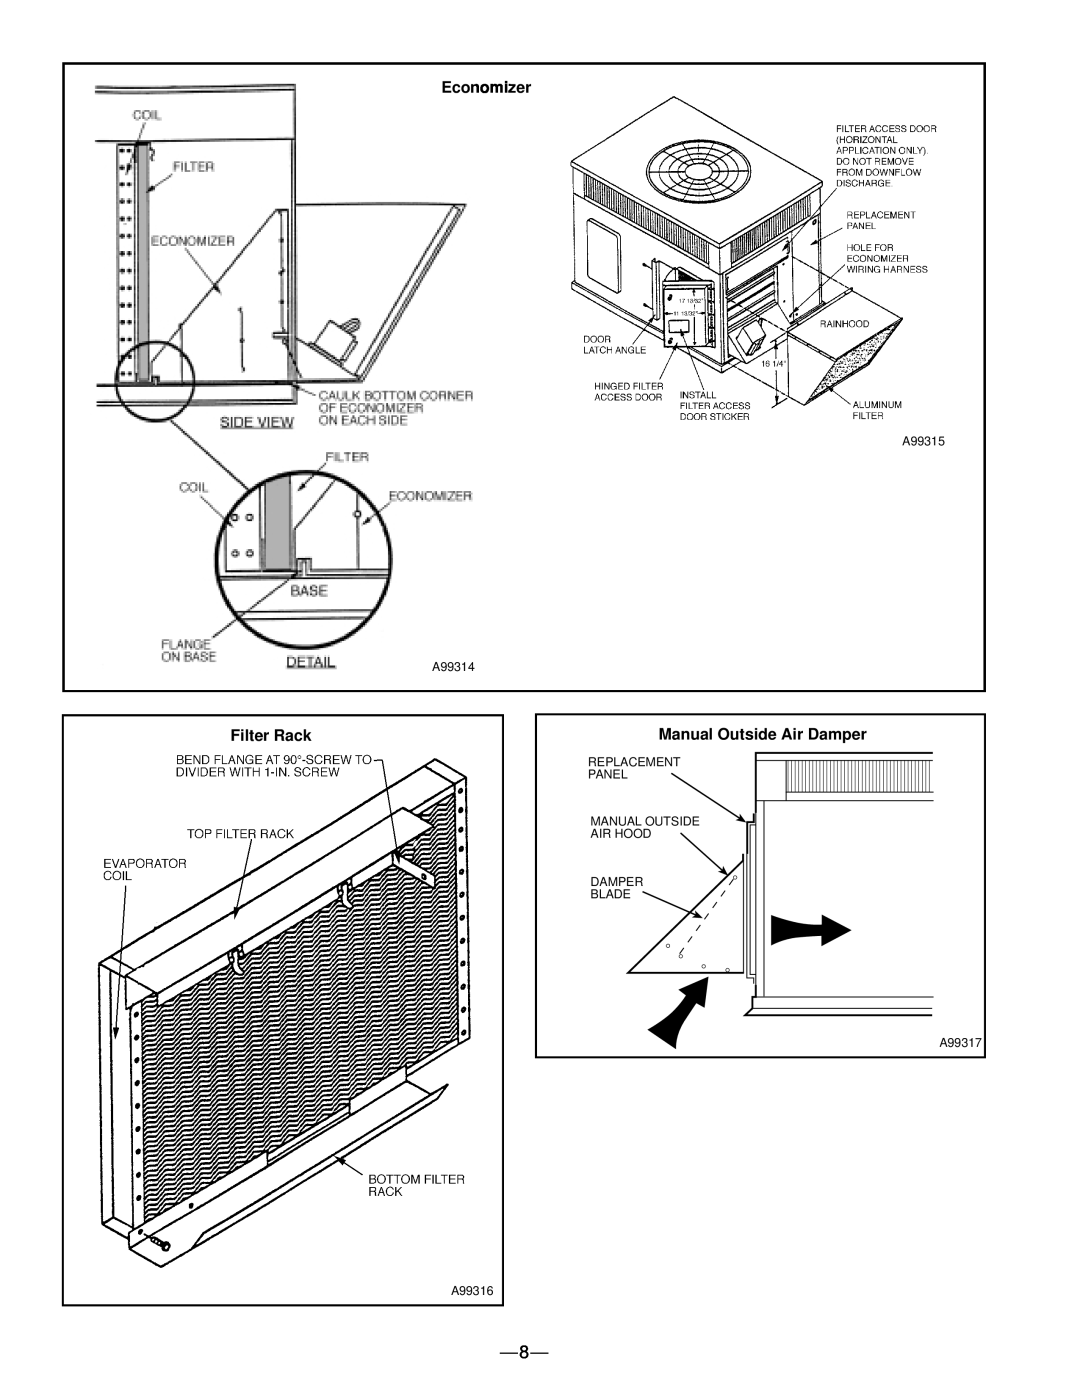 Bryant 583B manual Economizer, Filter Rack, Manual Outside Air Damper 